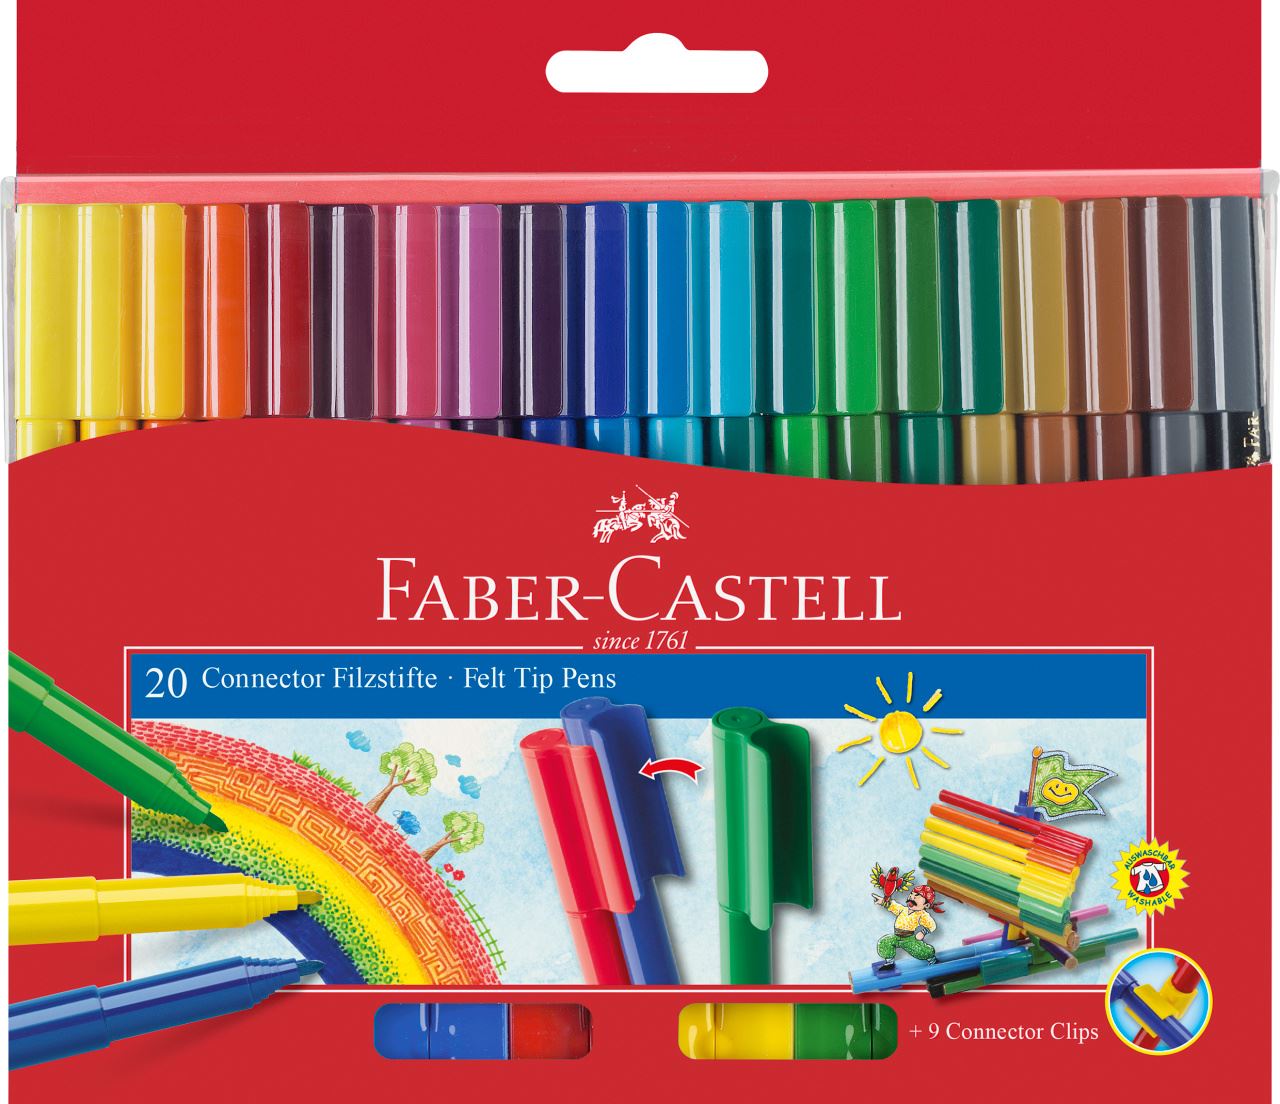 Faber-Castell - Rotulador Connector, estuche cartón, 20 piezas